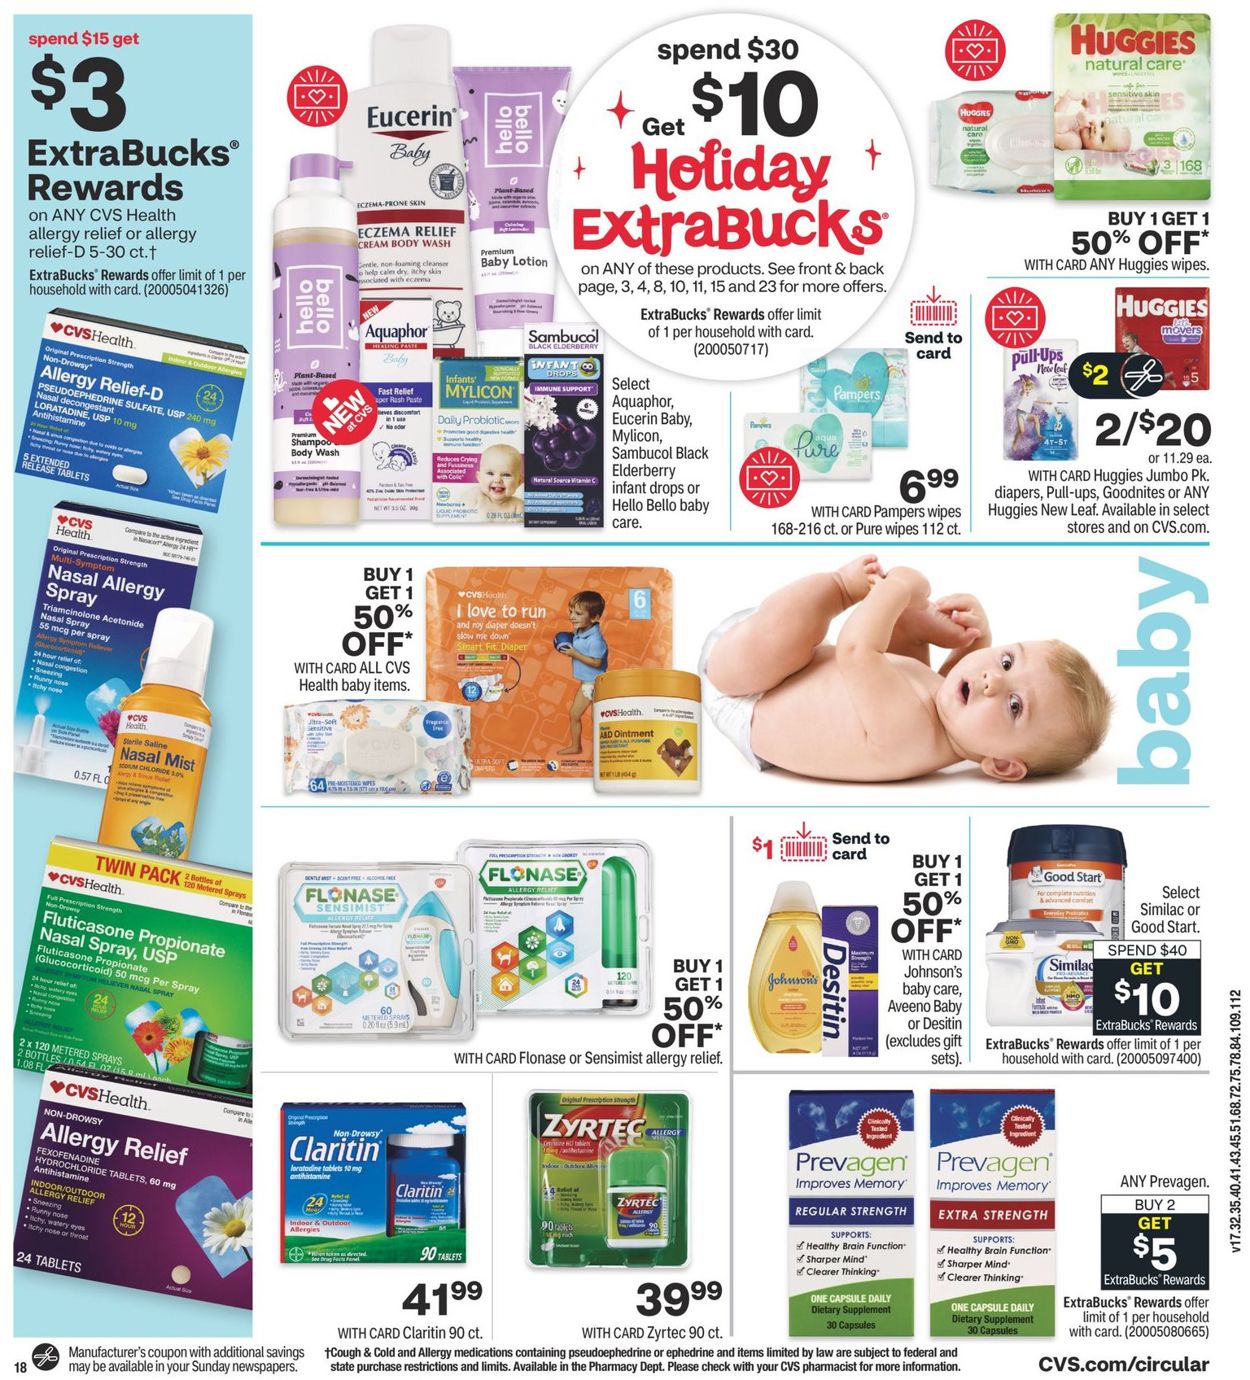 Catalogue CVS Pharmacy from 12/06/2020